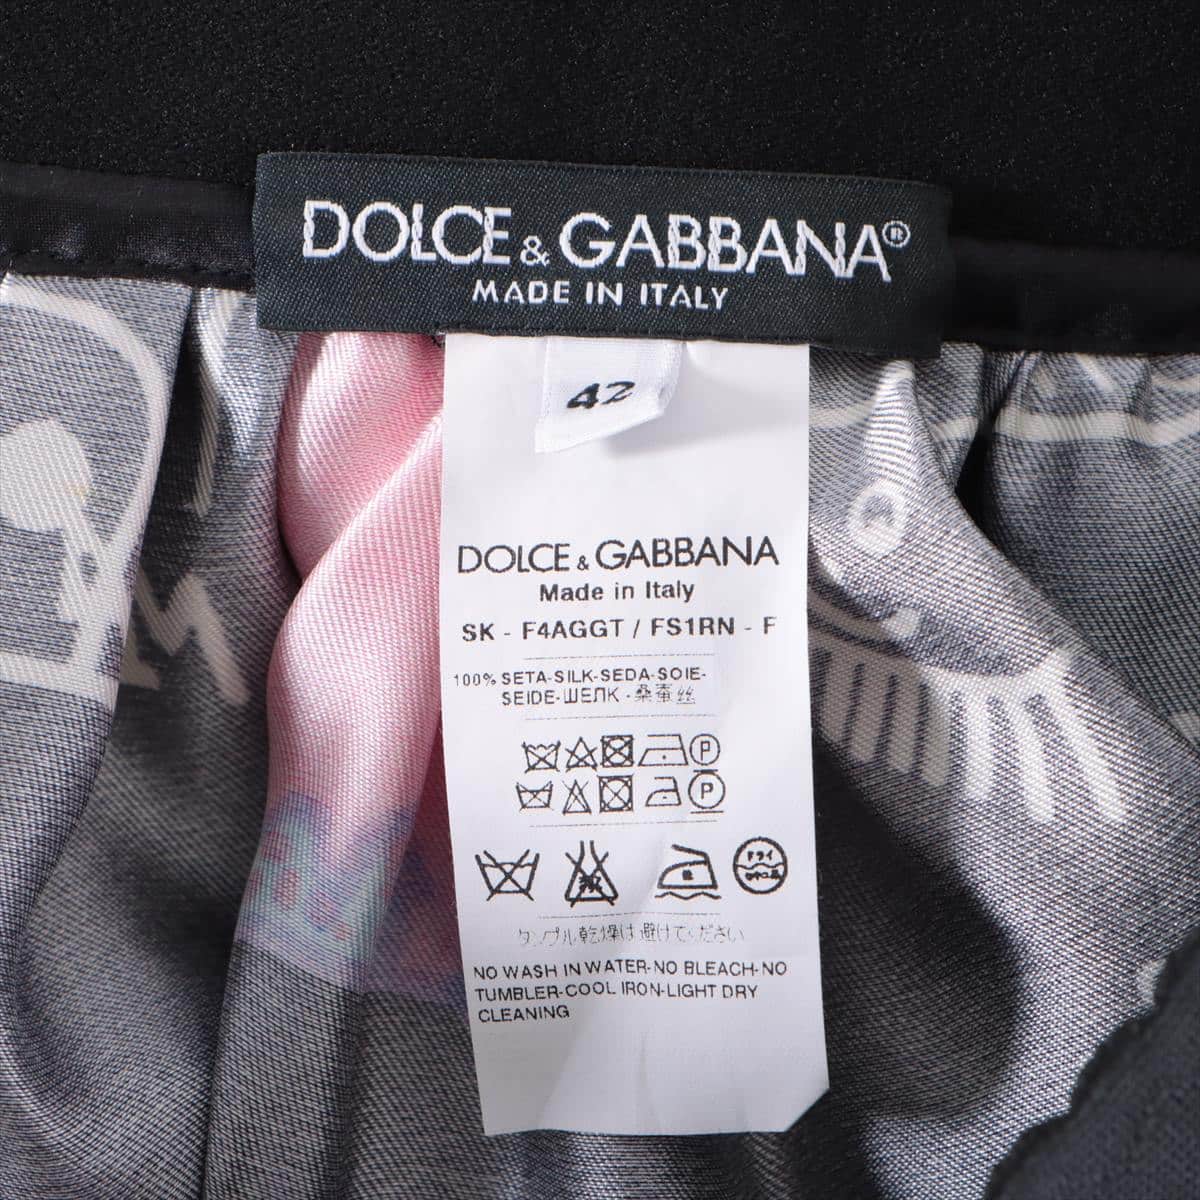 Dolce & Gabbana Silk Skirt 42 Ladies' Black  MANMA full pattern